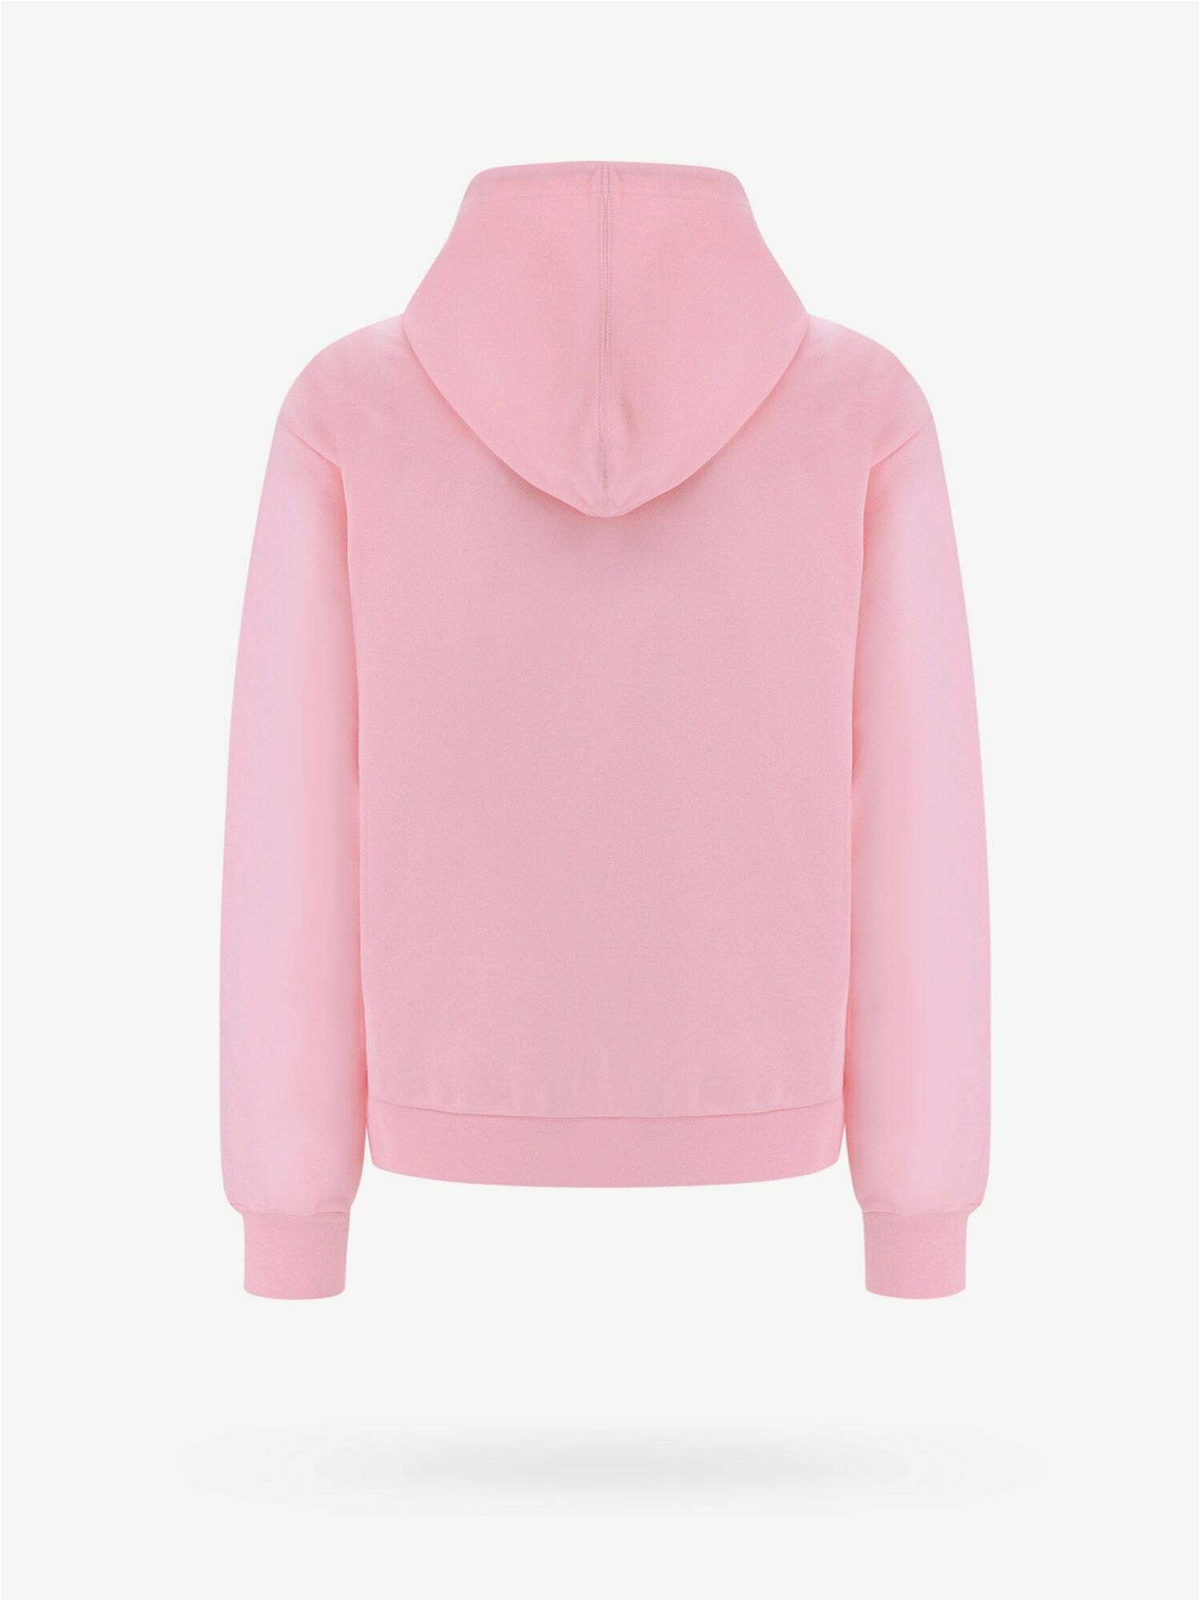 Marni Sweatshirt Pink Mens Marni